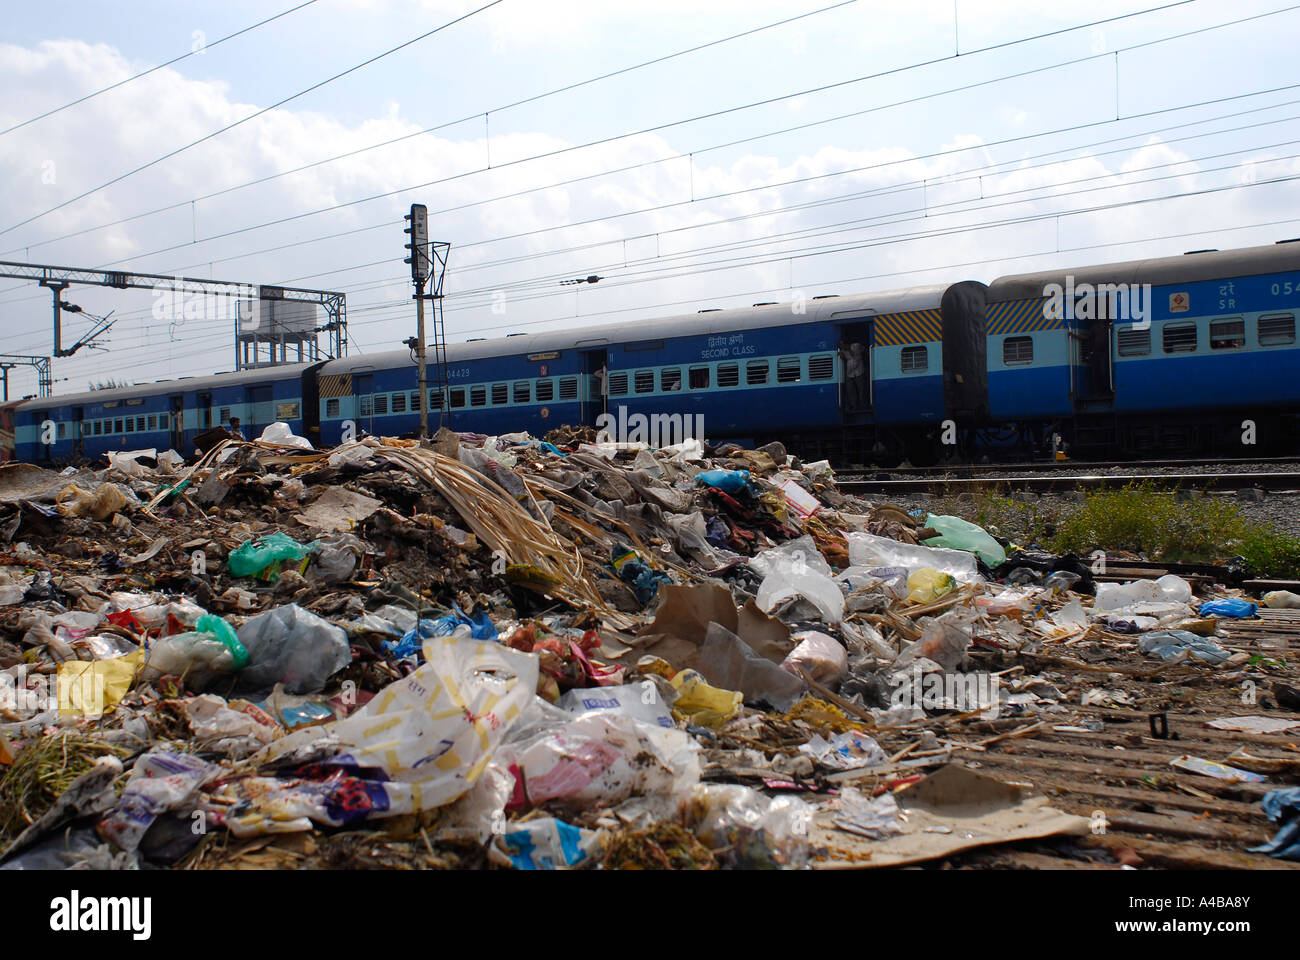 Stock Bild von einem Slum in Chennai und der Müll, der um ihn herum und ein Personenzug mit gekippt wird Stockfoto